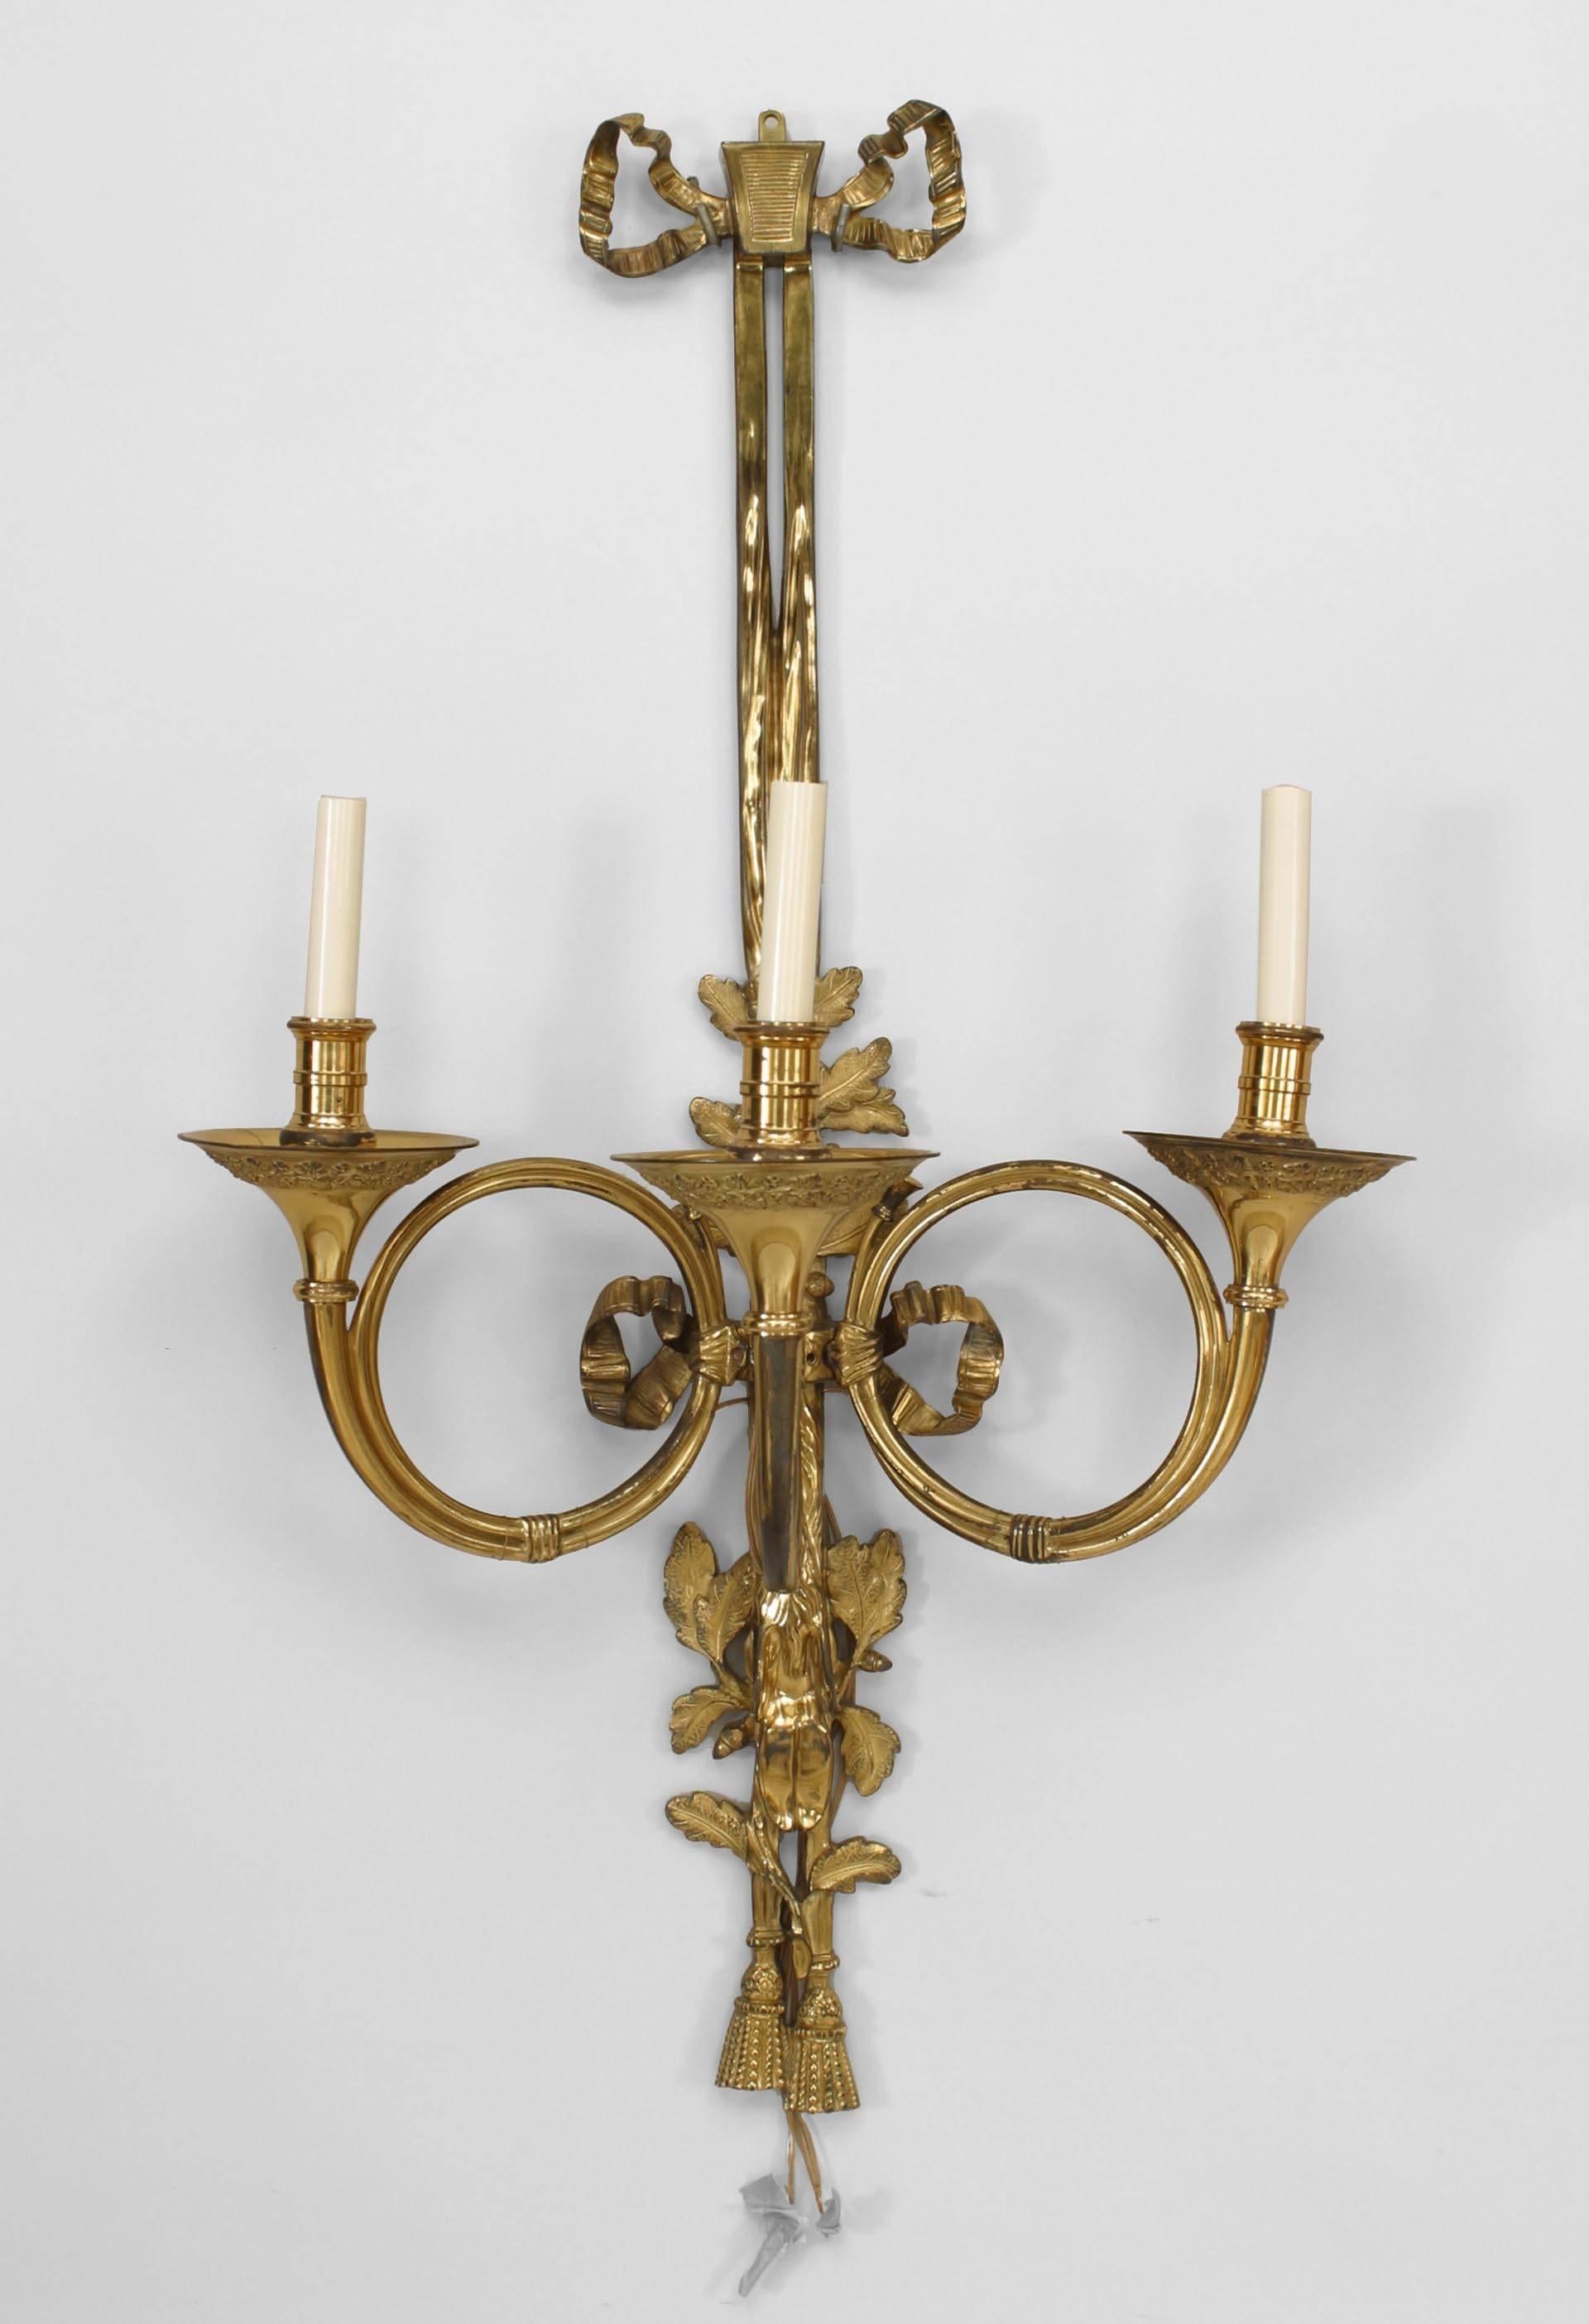 7 Bronzewandleuchter im französischen Louis-XVI-Stil (20. Jh.) mit drei hornförmigen Armen, Bogenknoten und Quasten. (PREIS FÜR JEDEN)
